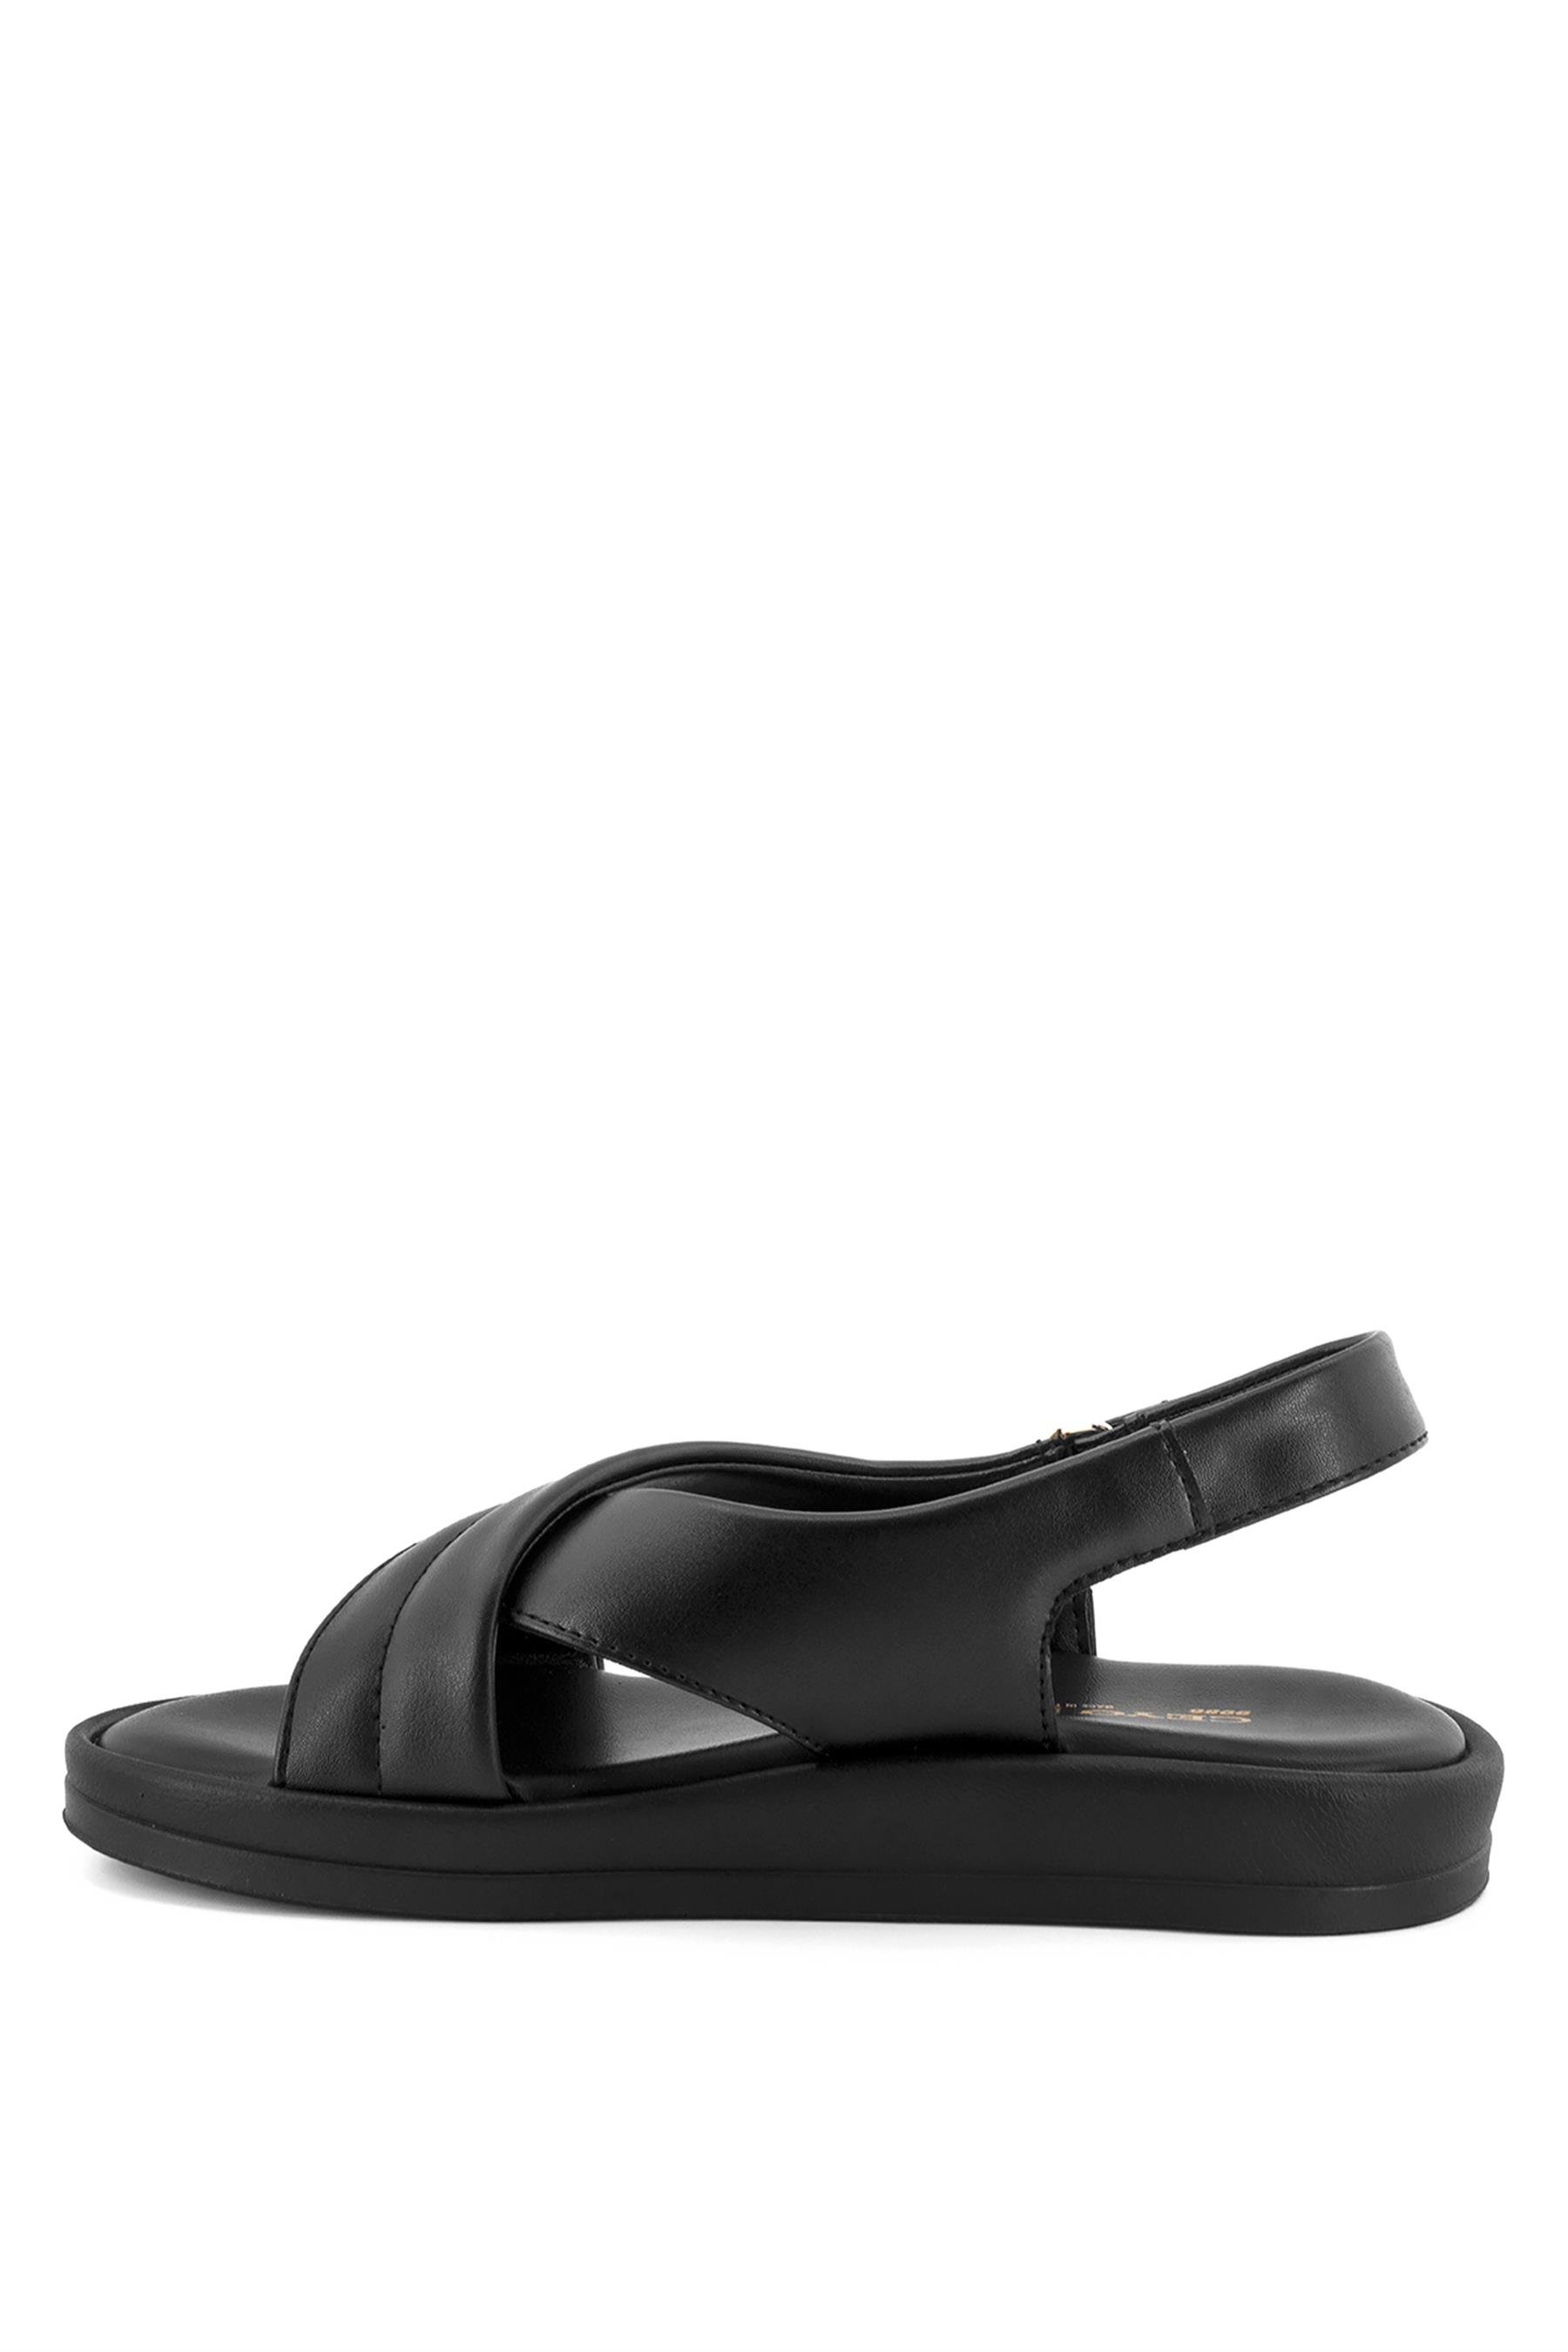 Ceyo 99863 Kadın Sandalet Siyah - Ayakkabı Fuarı Elit